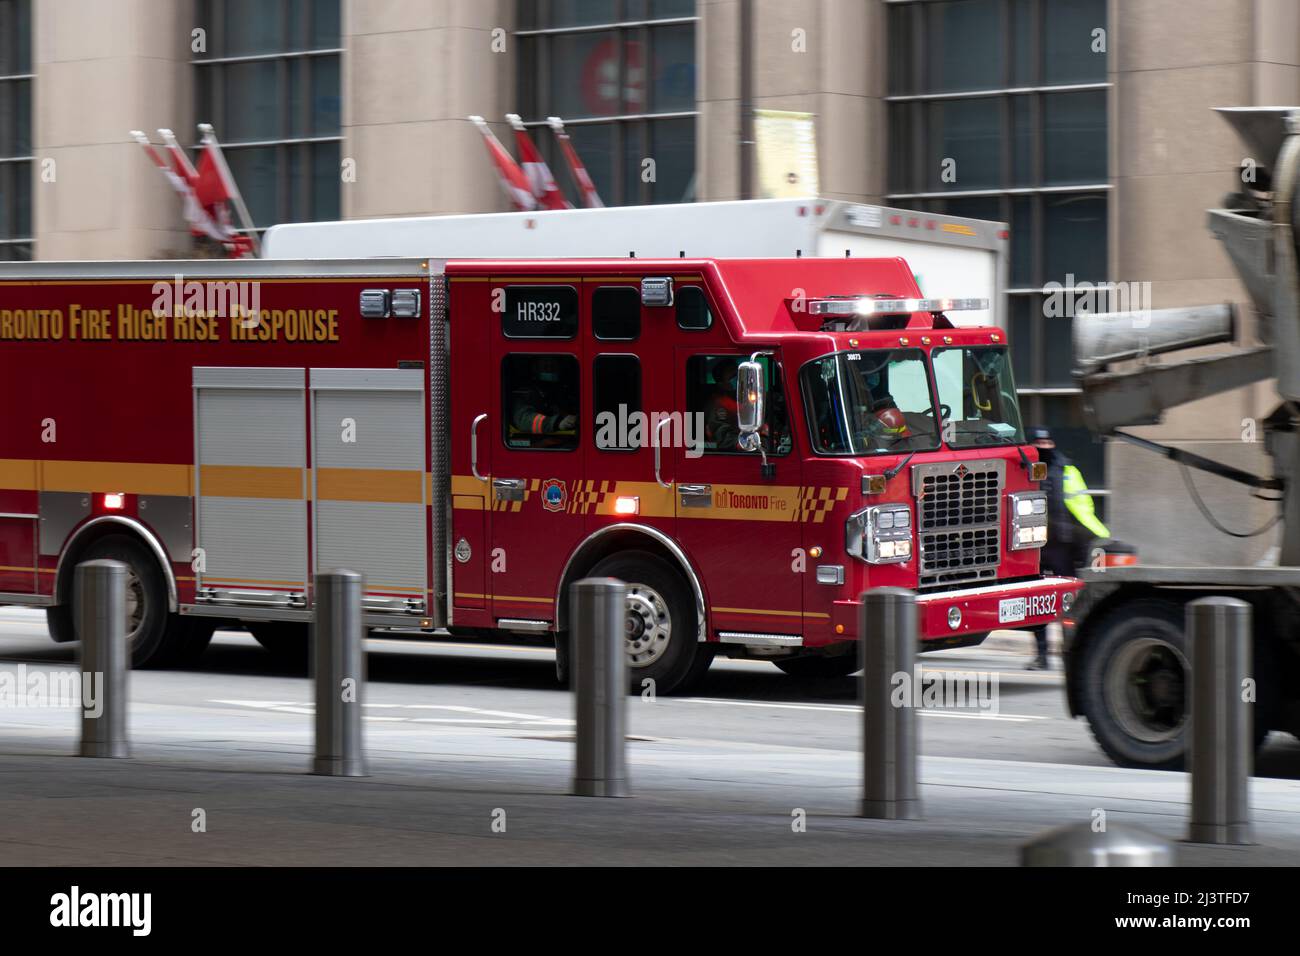 On voit un camion de pompiers de Toronto répondre à un appel, se précipitant dans la rue animée du centre-ville de Toronto. Banque D'Images